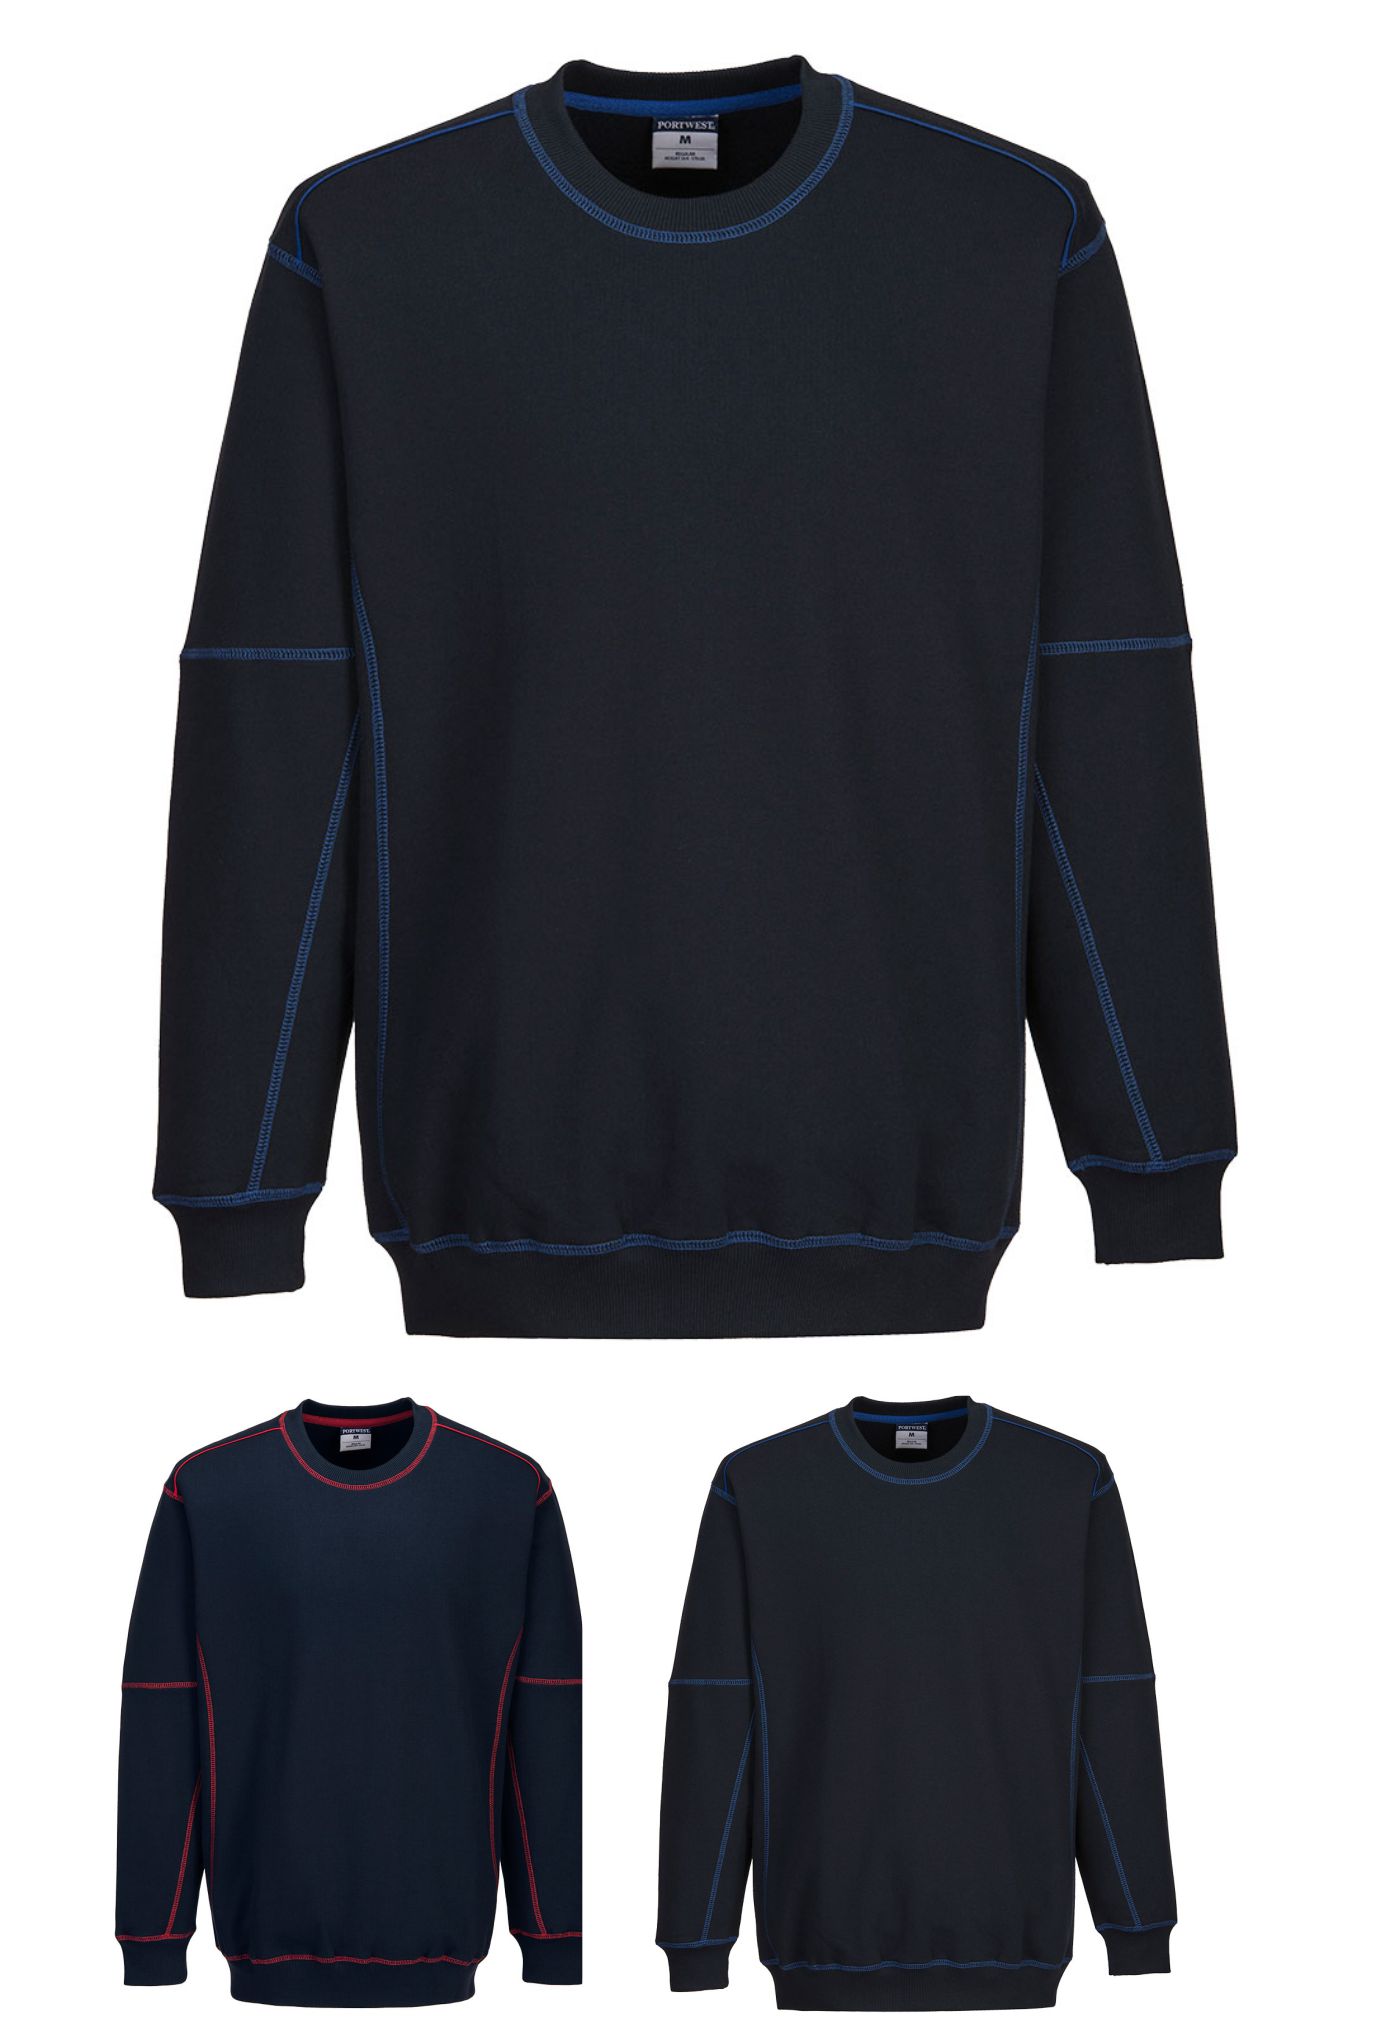 Portwest B318 - Essential Two Tone Sweatshirt